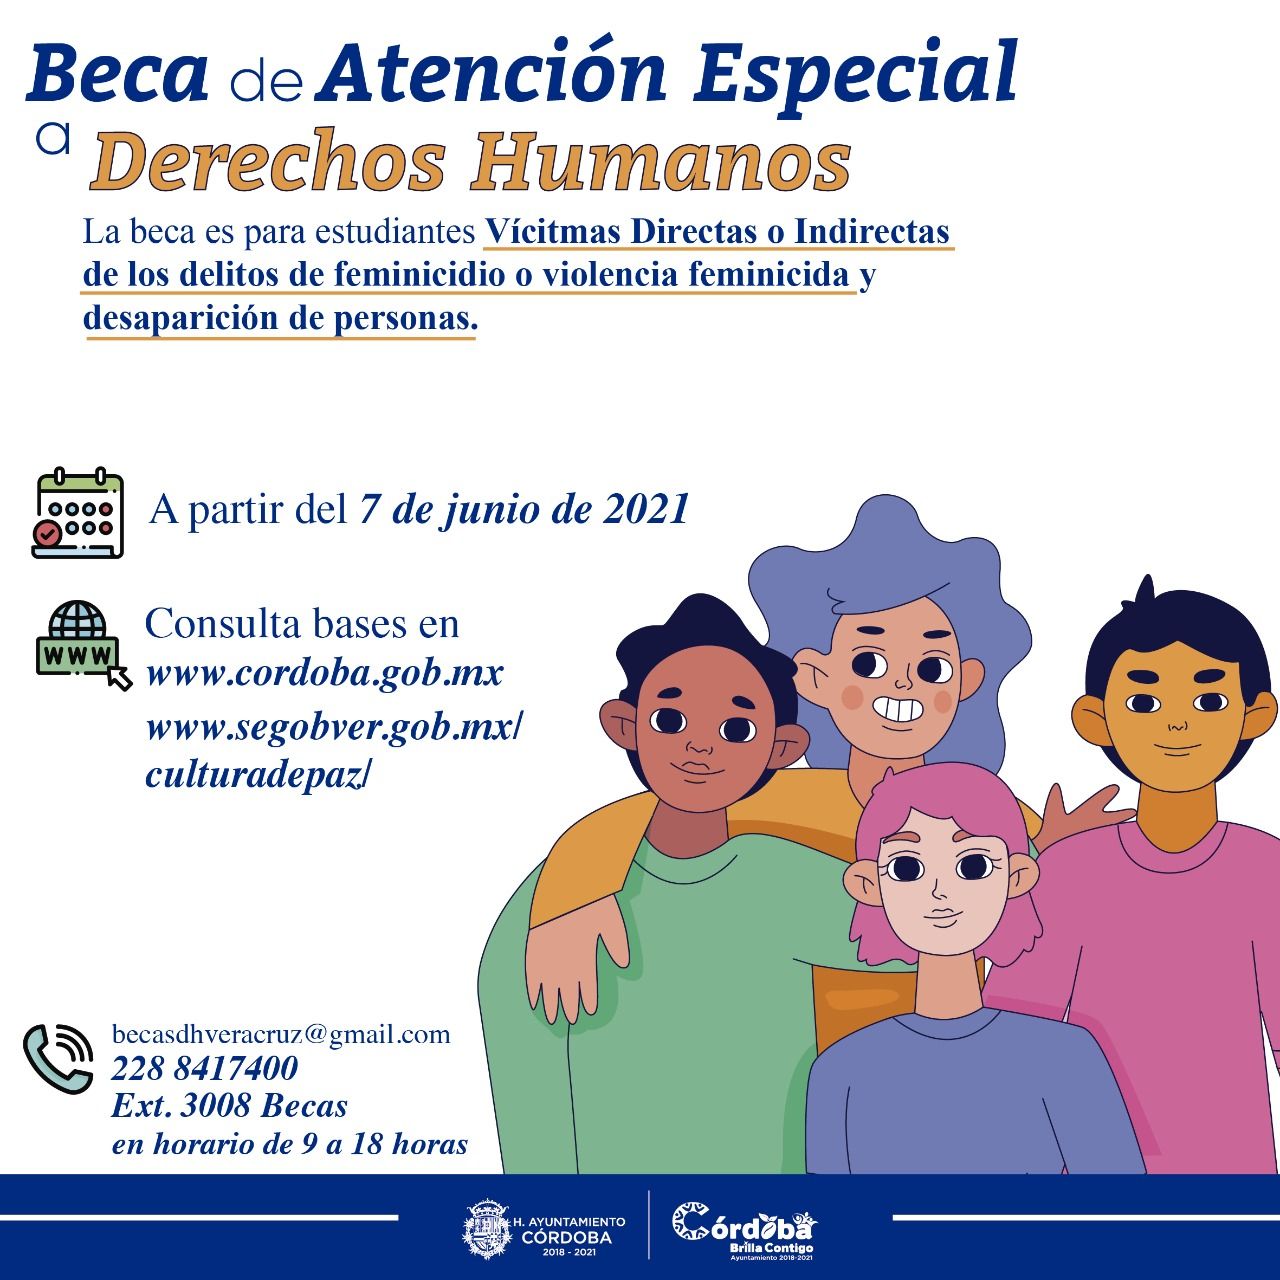 Ayuntamiento de Córdoba invita a estudiantes a concursar por una Beca de Atención Especial a Derechos Humanos 2021 